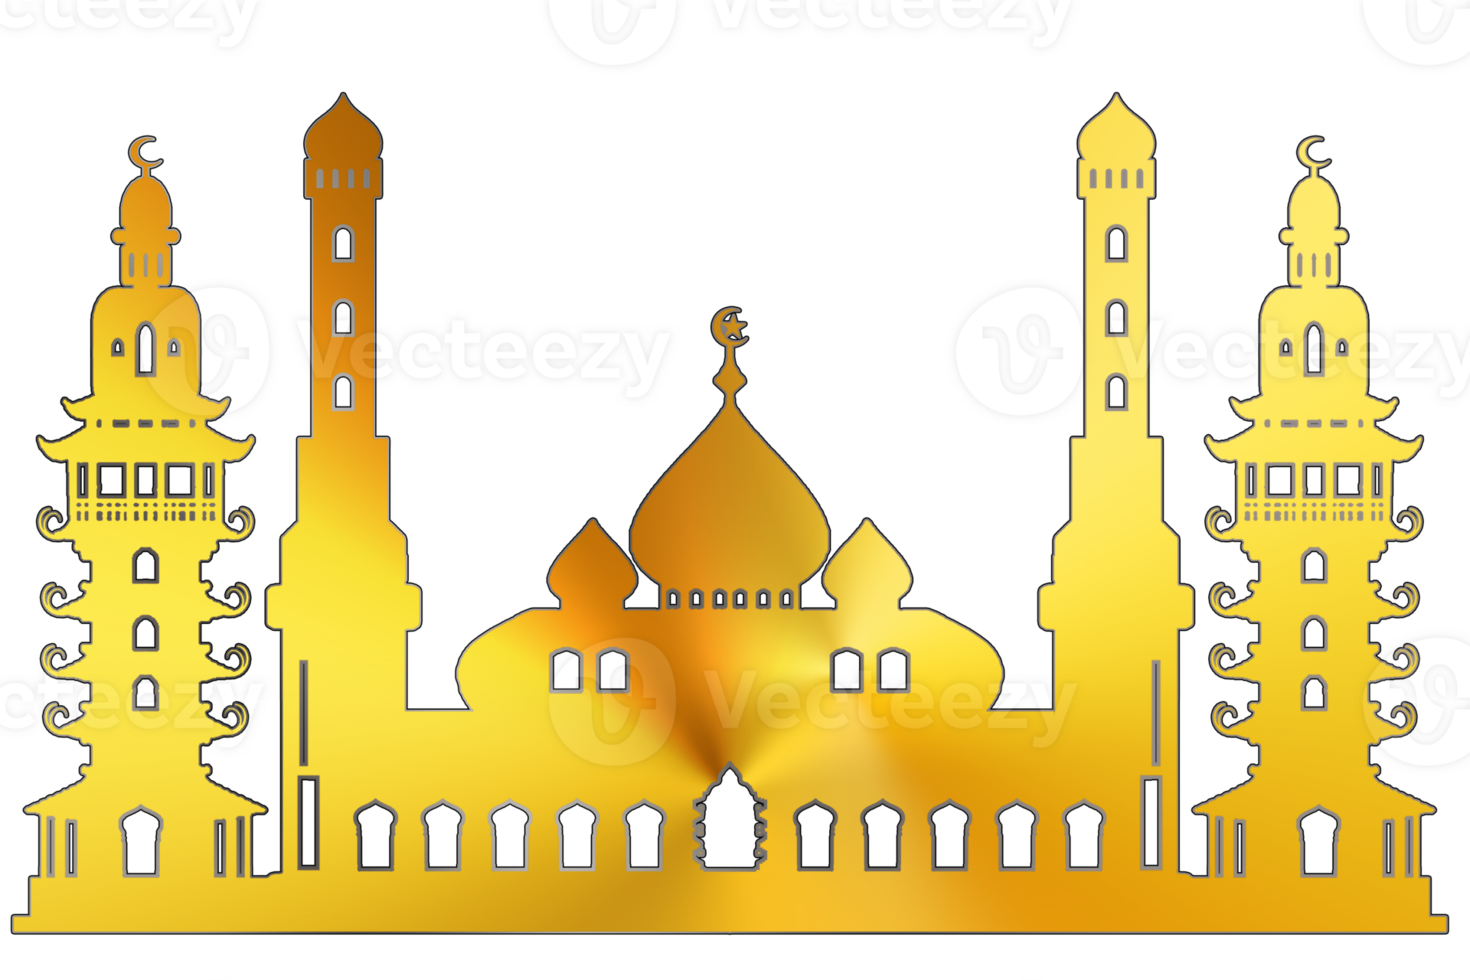 design mönster symbol hade moské använda sig av för muslim kort hälsning png